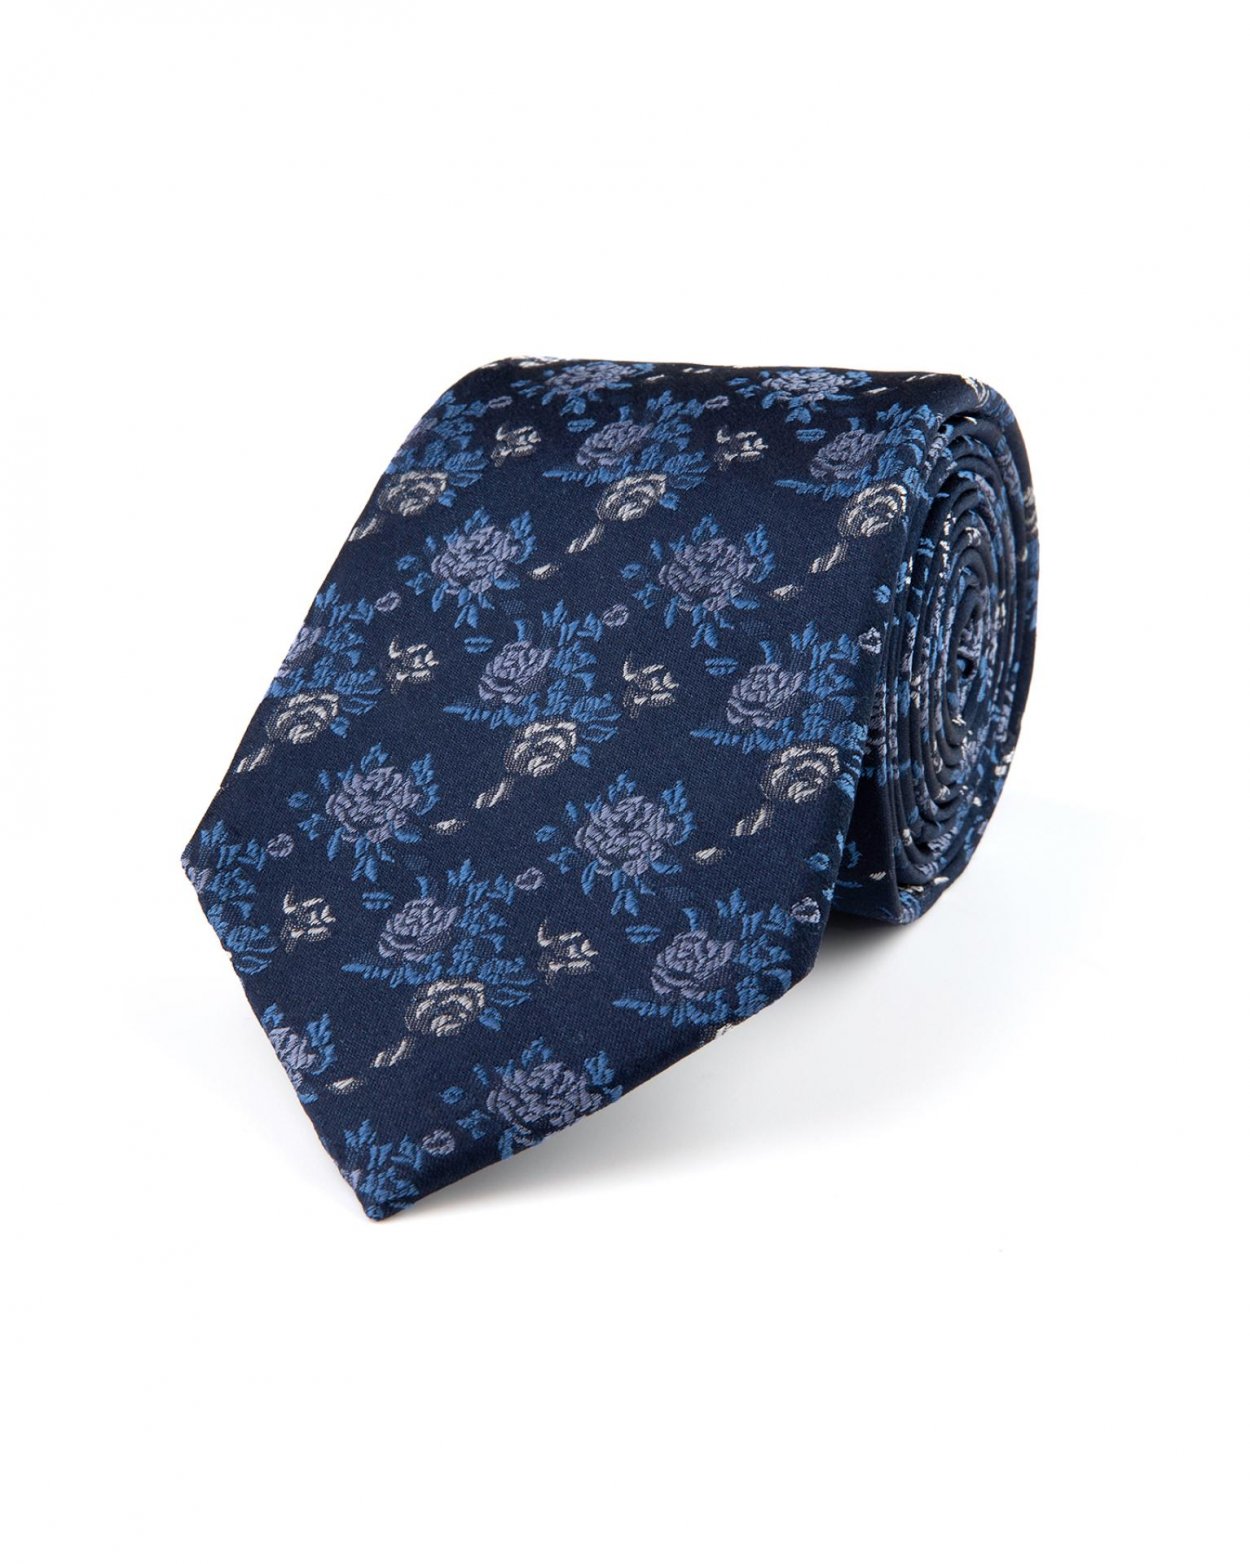 Tmavě modrá hedvábná kravata s květinovým vzorem